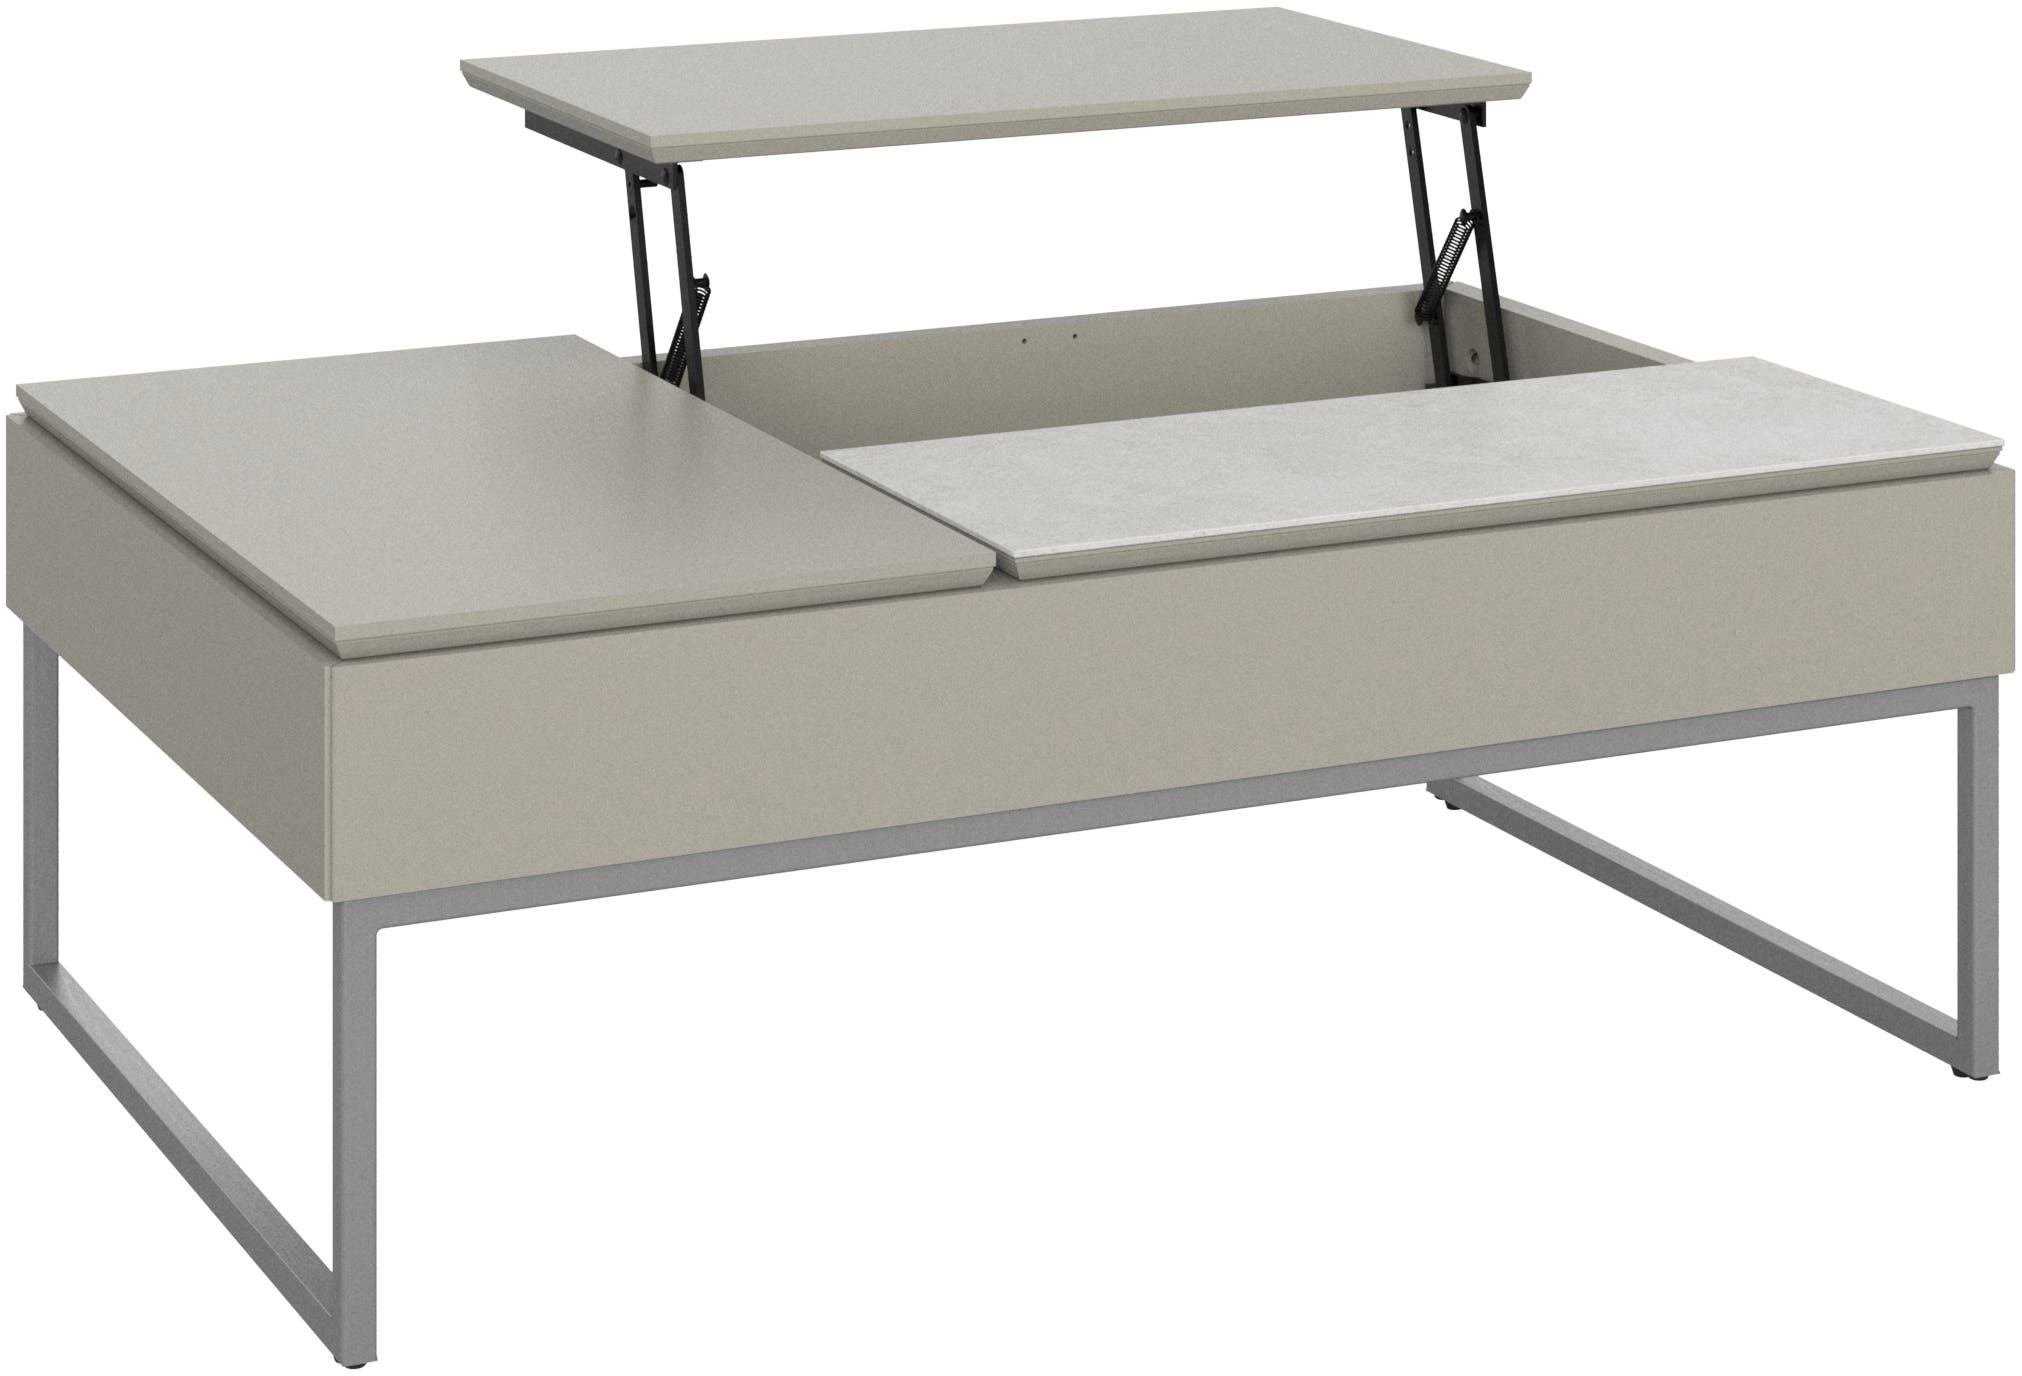 デザイナーテーブル | デンマークデザインの家具 - ブラウン 